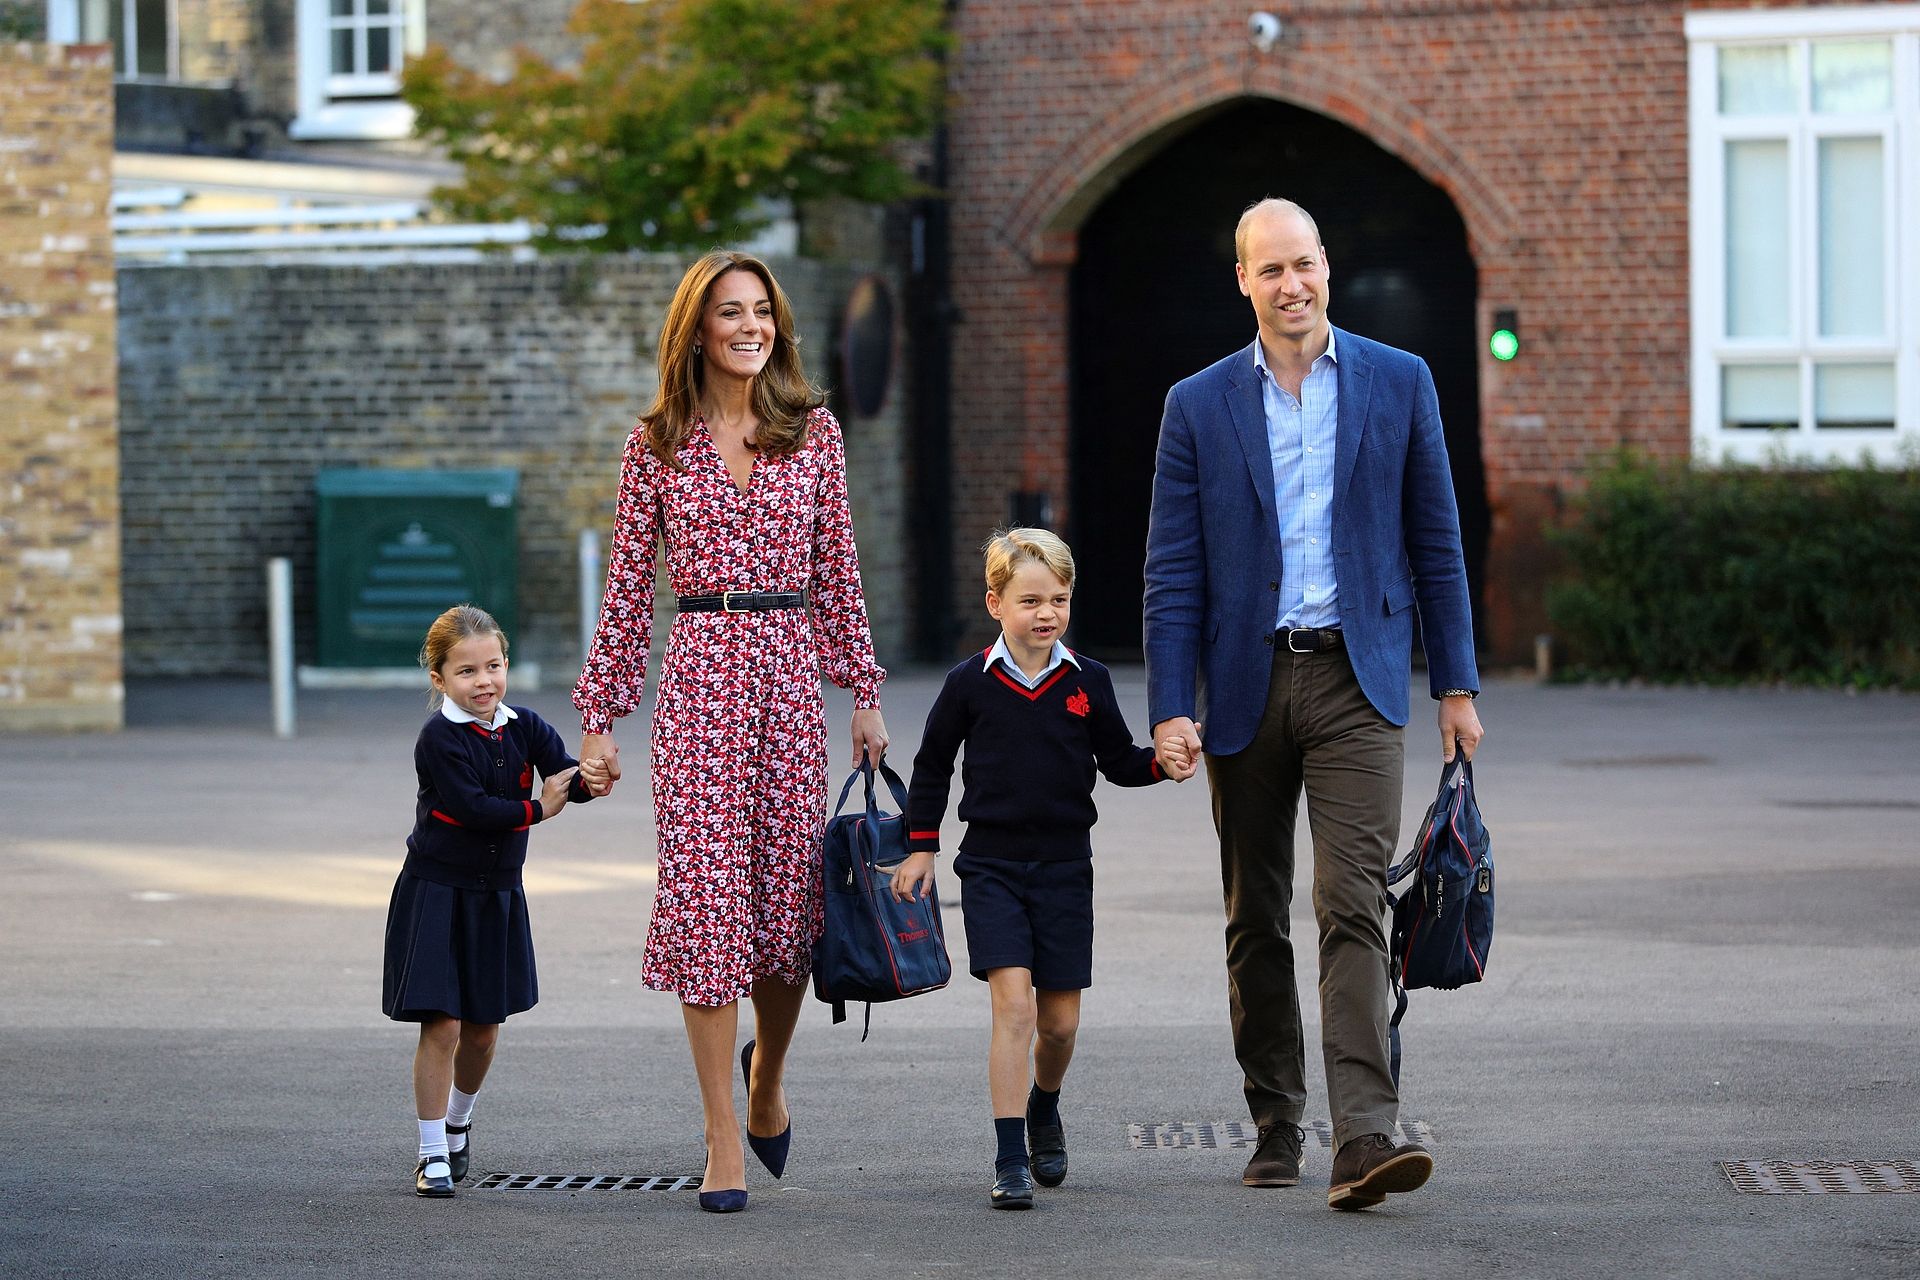 Een stralende familiefoto op de eerste schooldag van prinses Charlotte, september 2019. V.l.n.r zien